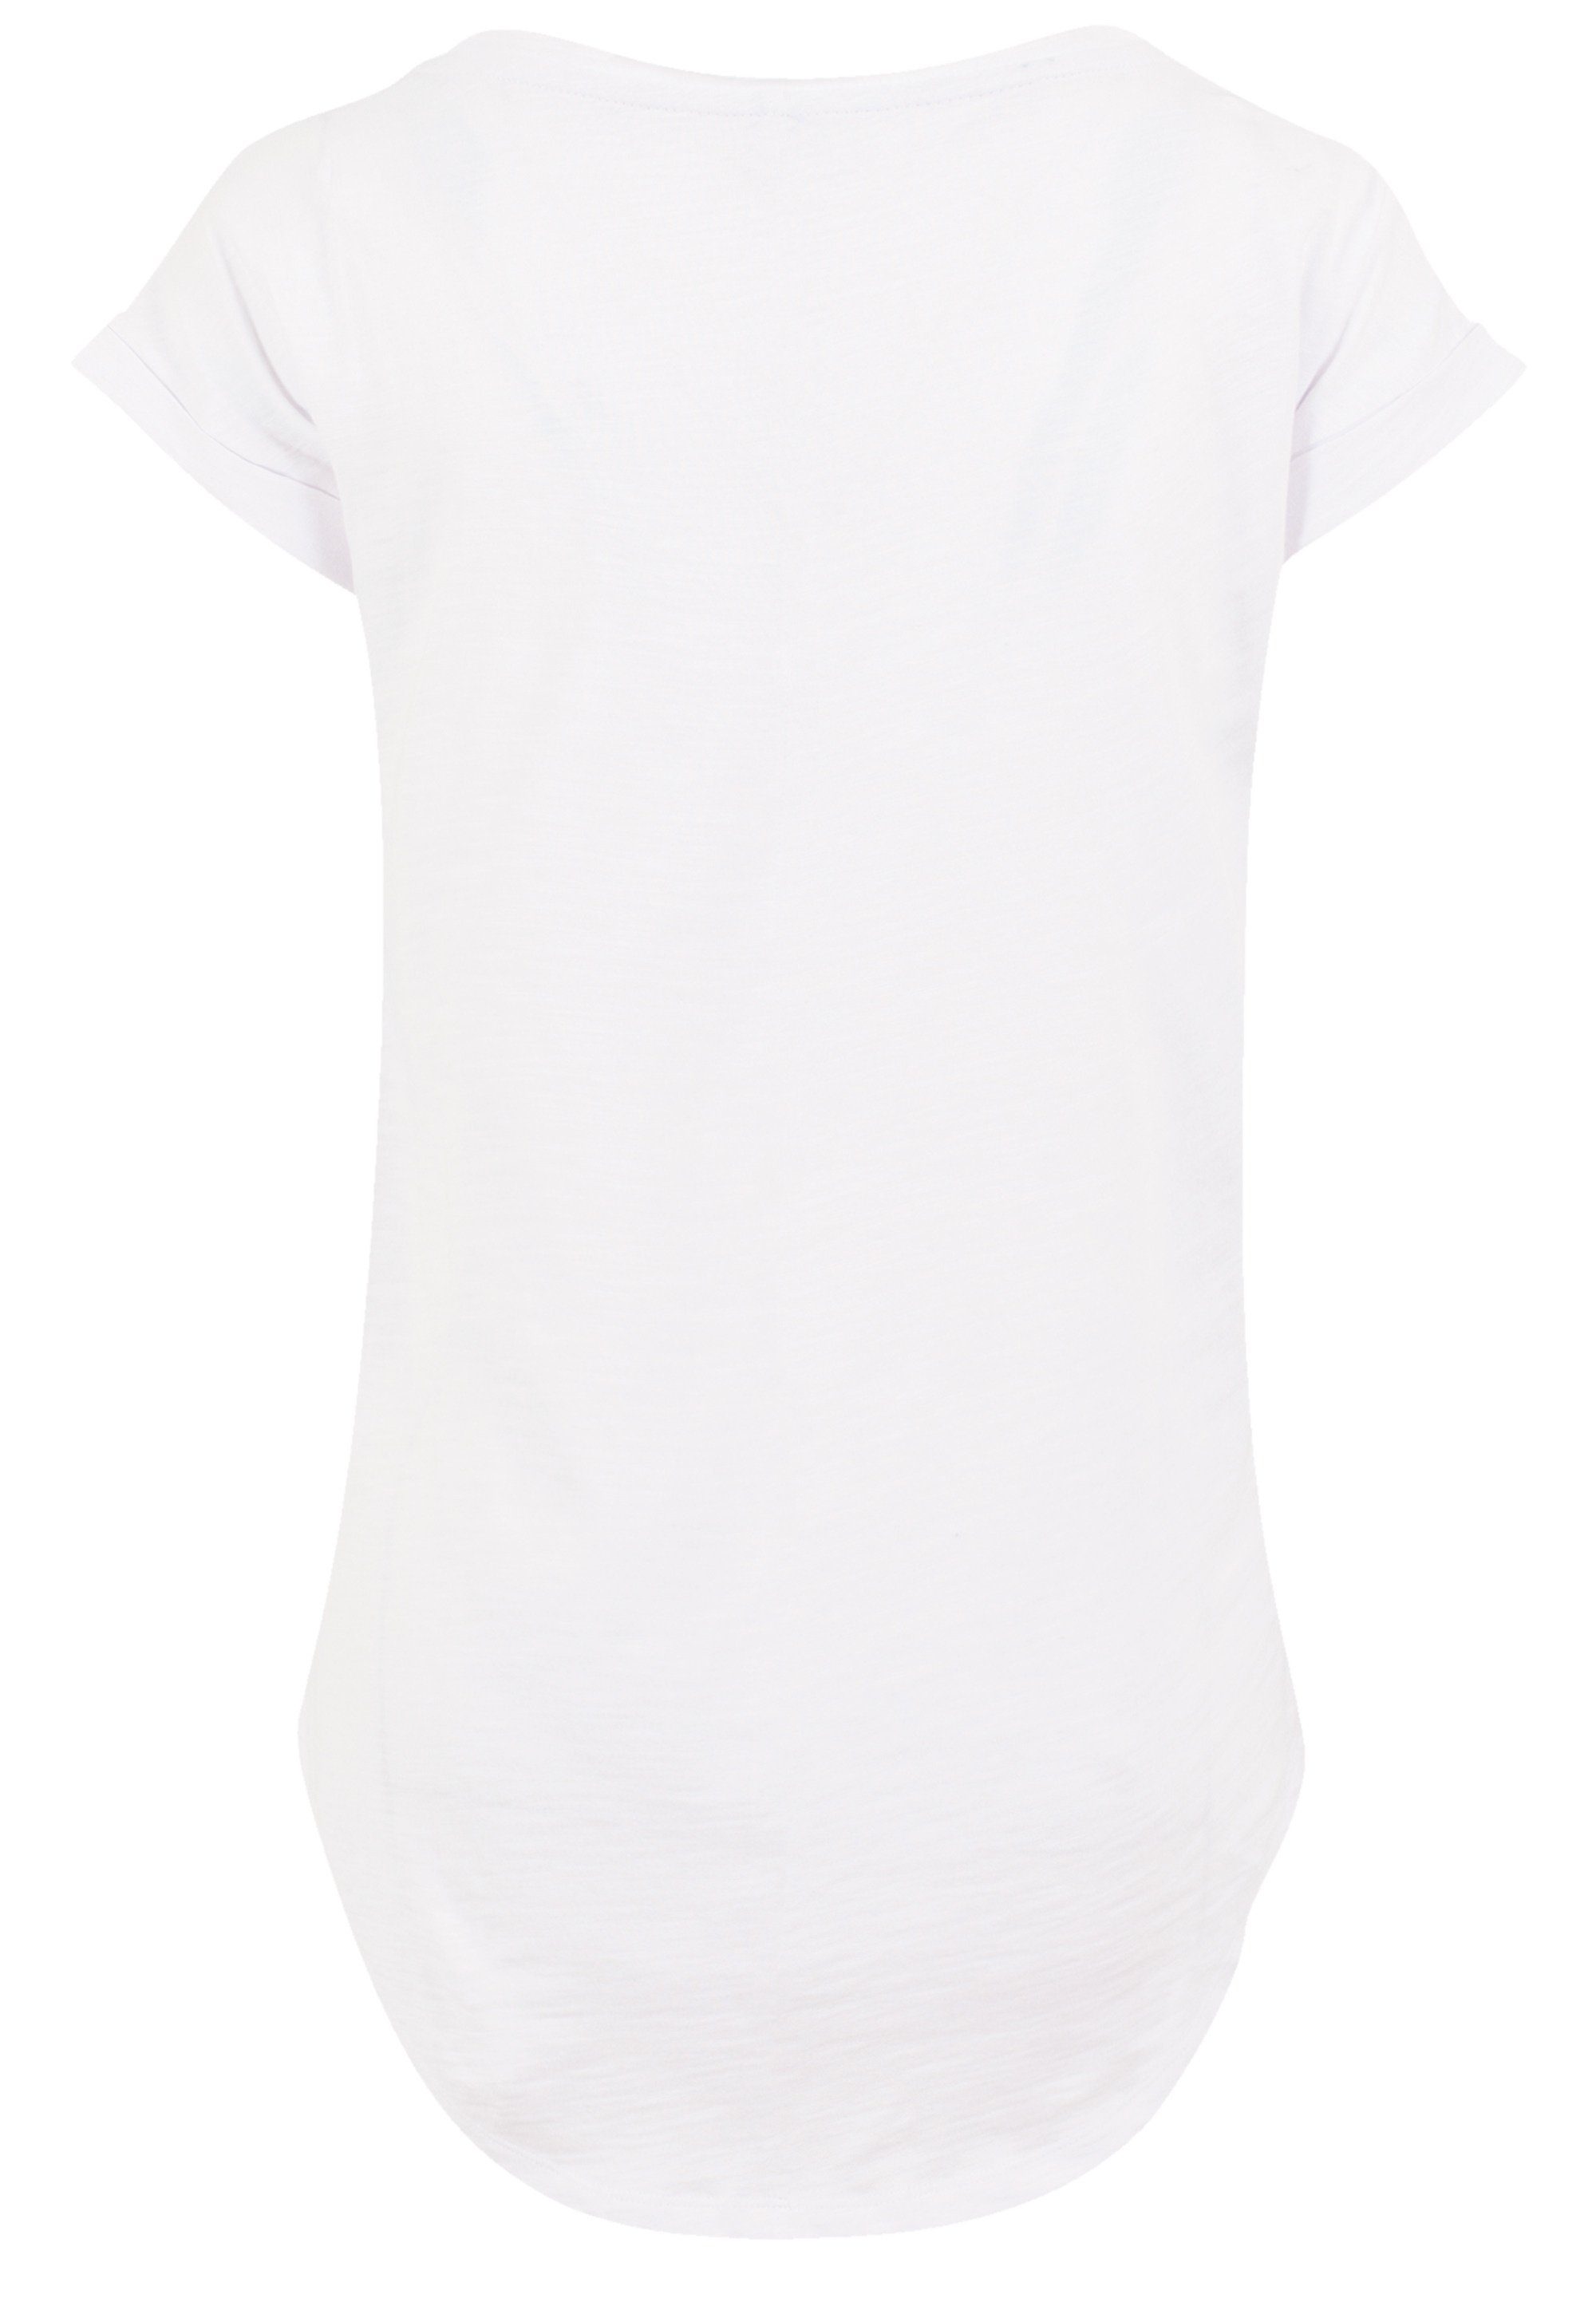 F4NT4STIC T-Shirt Disney Peter Pan Pose Tragekomfort mit Premium Qualität, Sehr weicher hohem Baumwollstoff